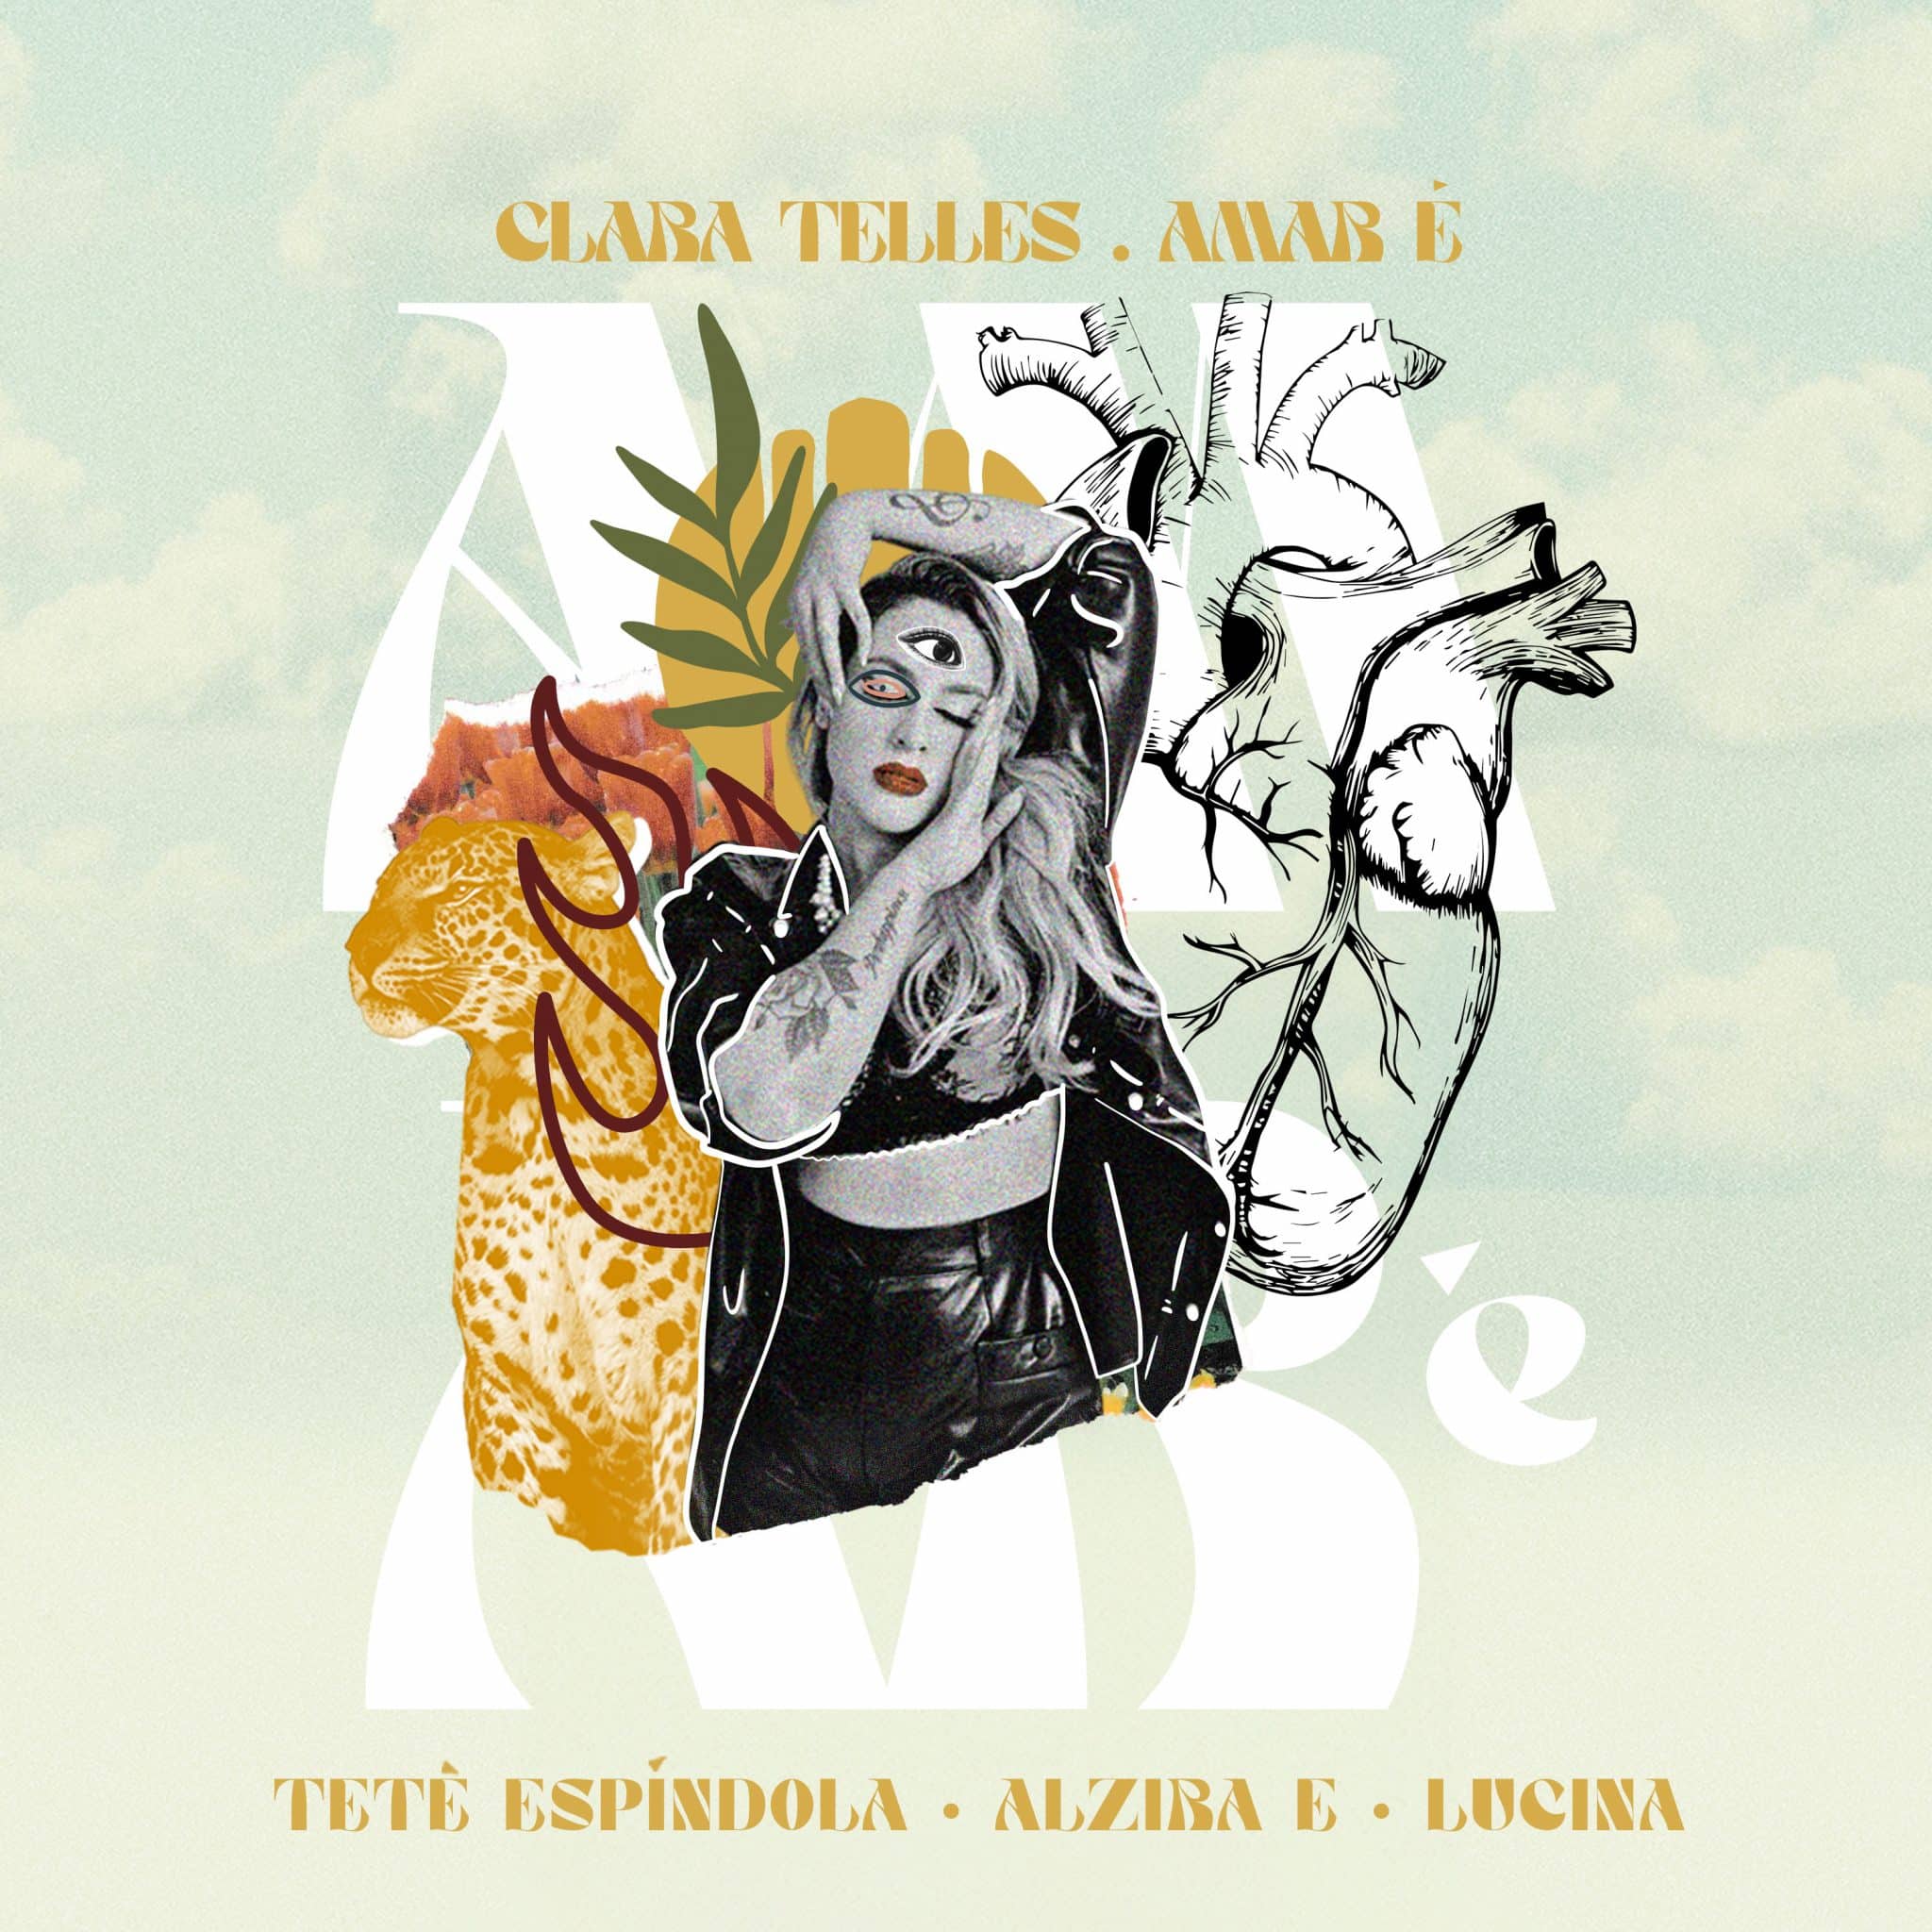 revistaprosaversoearte.com - Clara Telles lança single 'Amar É', com participação de Lucina, Tetê Espíndola e Alzira E.